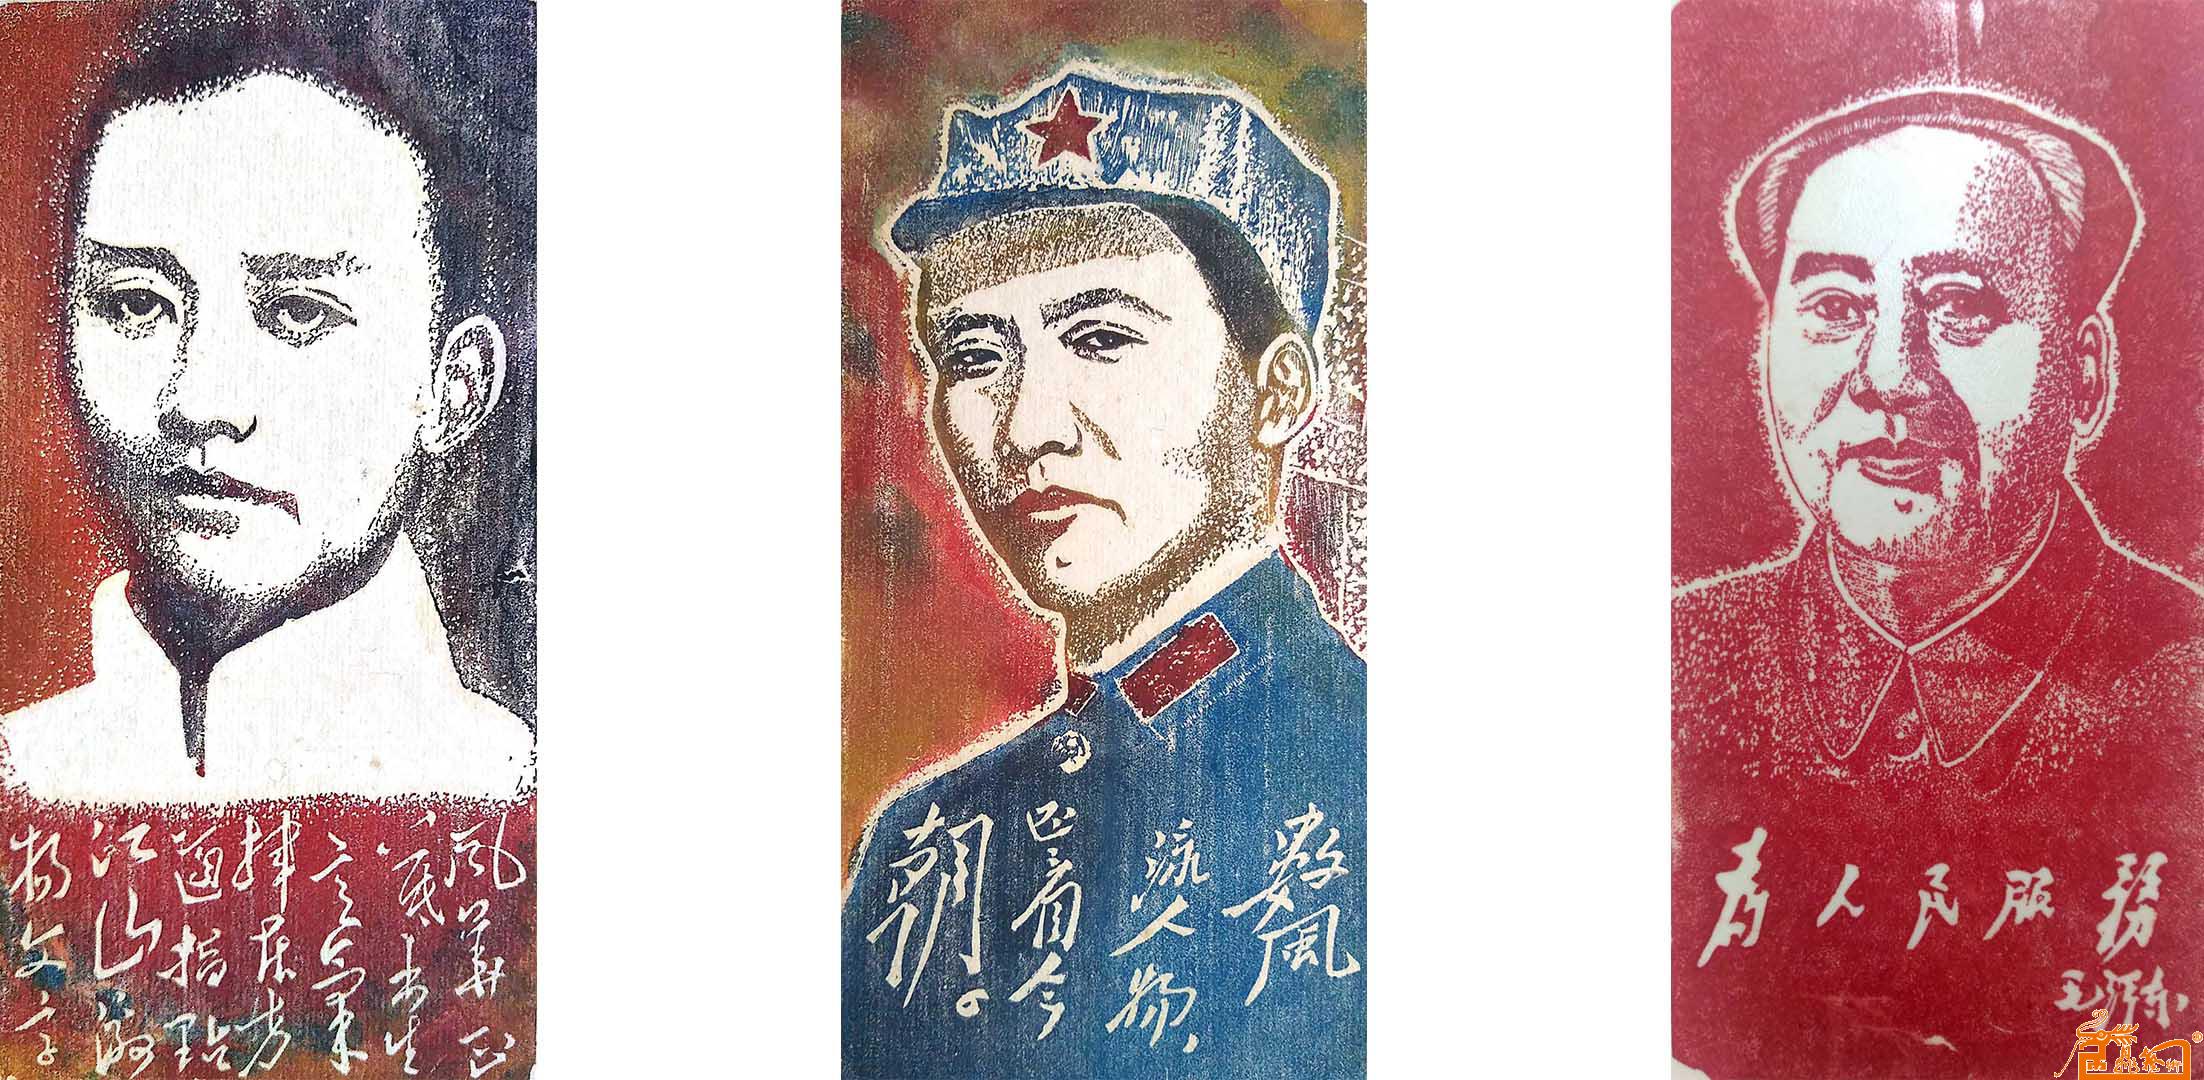 印泥画作品《领袖毛泽东》